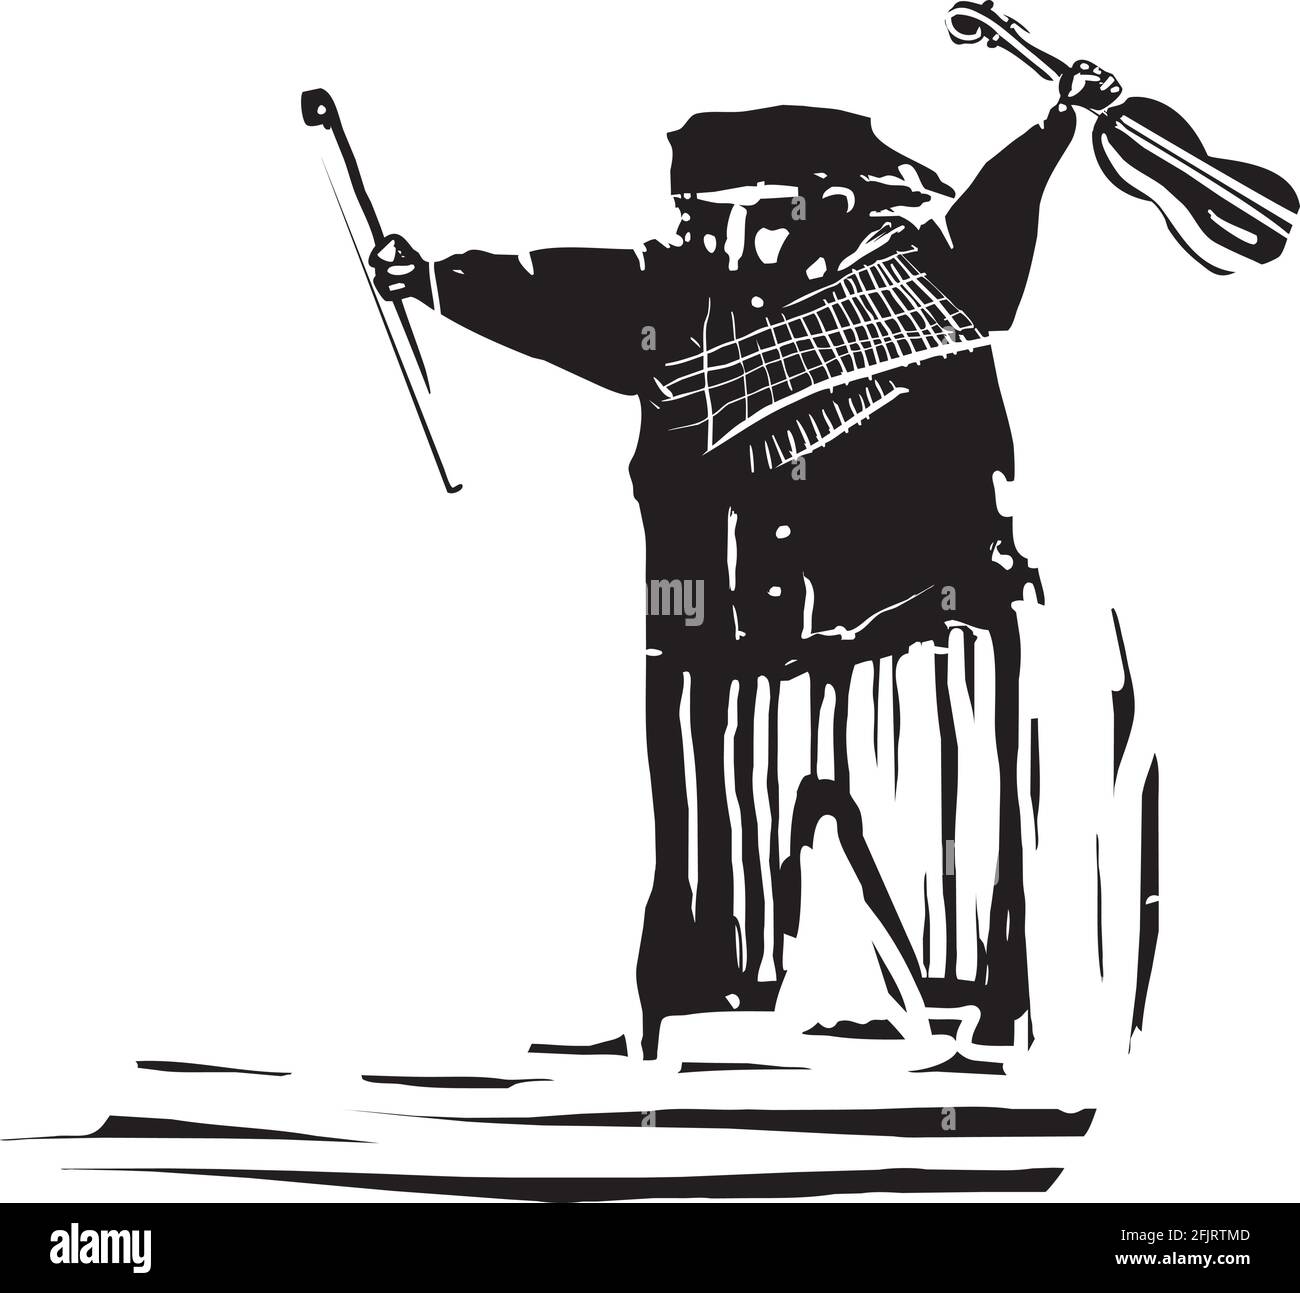 Image de style expressionniste de coupe de bois d'un homme gitan avec un violon Illustration de Vecteur